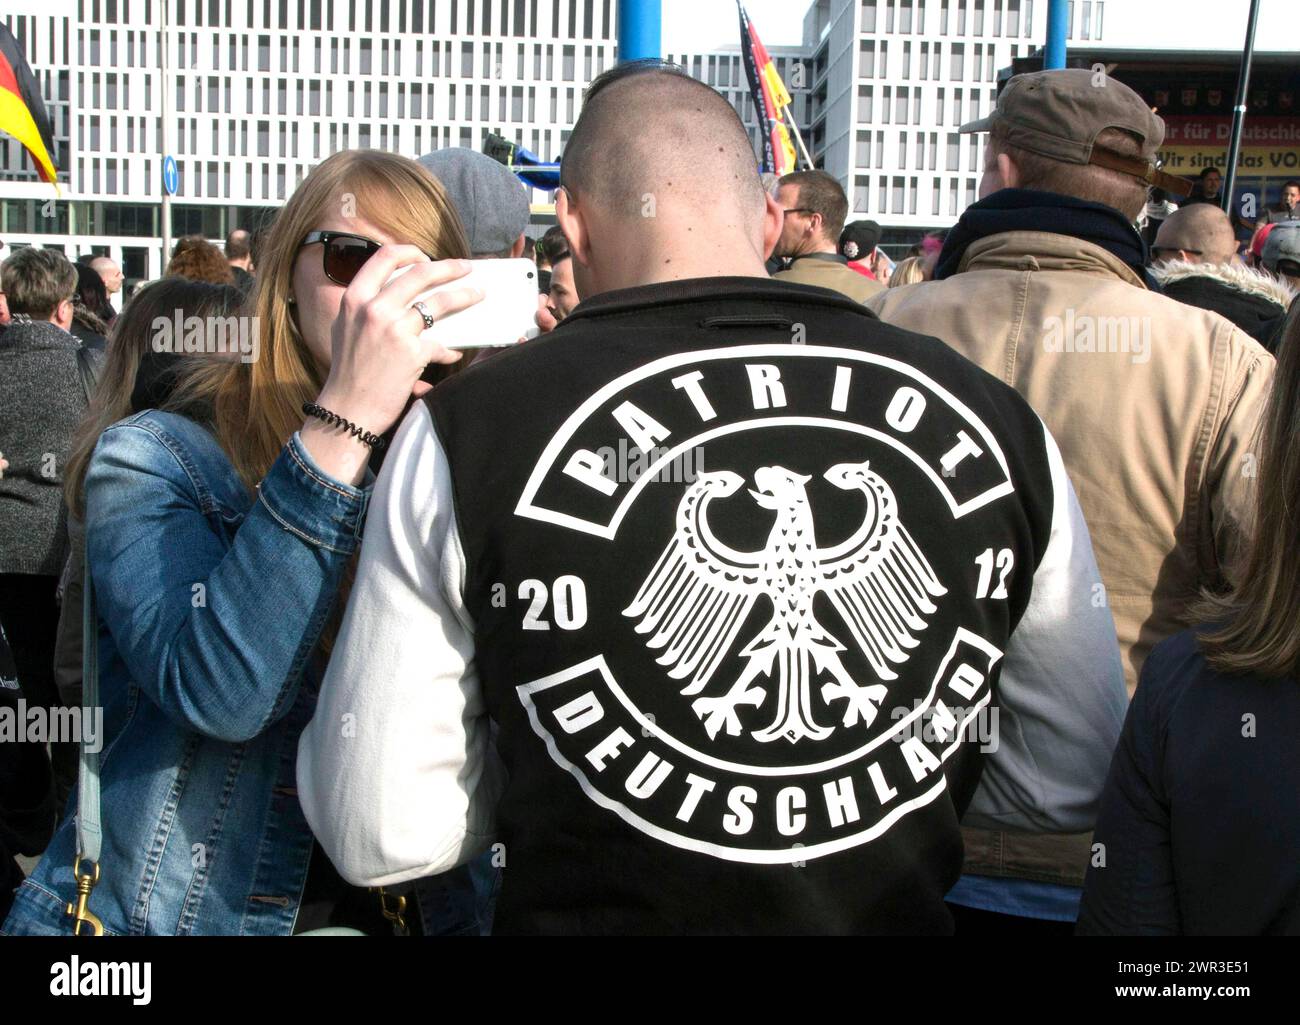 Ein Teilnehmer der Merkel muss weg Demonstration trägt eine Jacke mit der Aufschrift Patriot . Demonstration von Rechtspopulisten und Rechtsextremisten Stockfoto